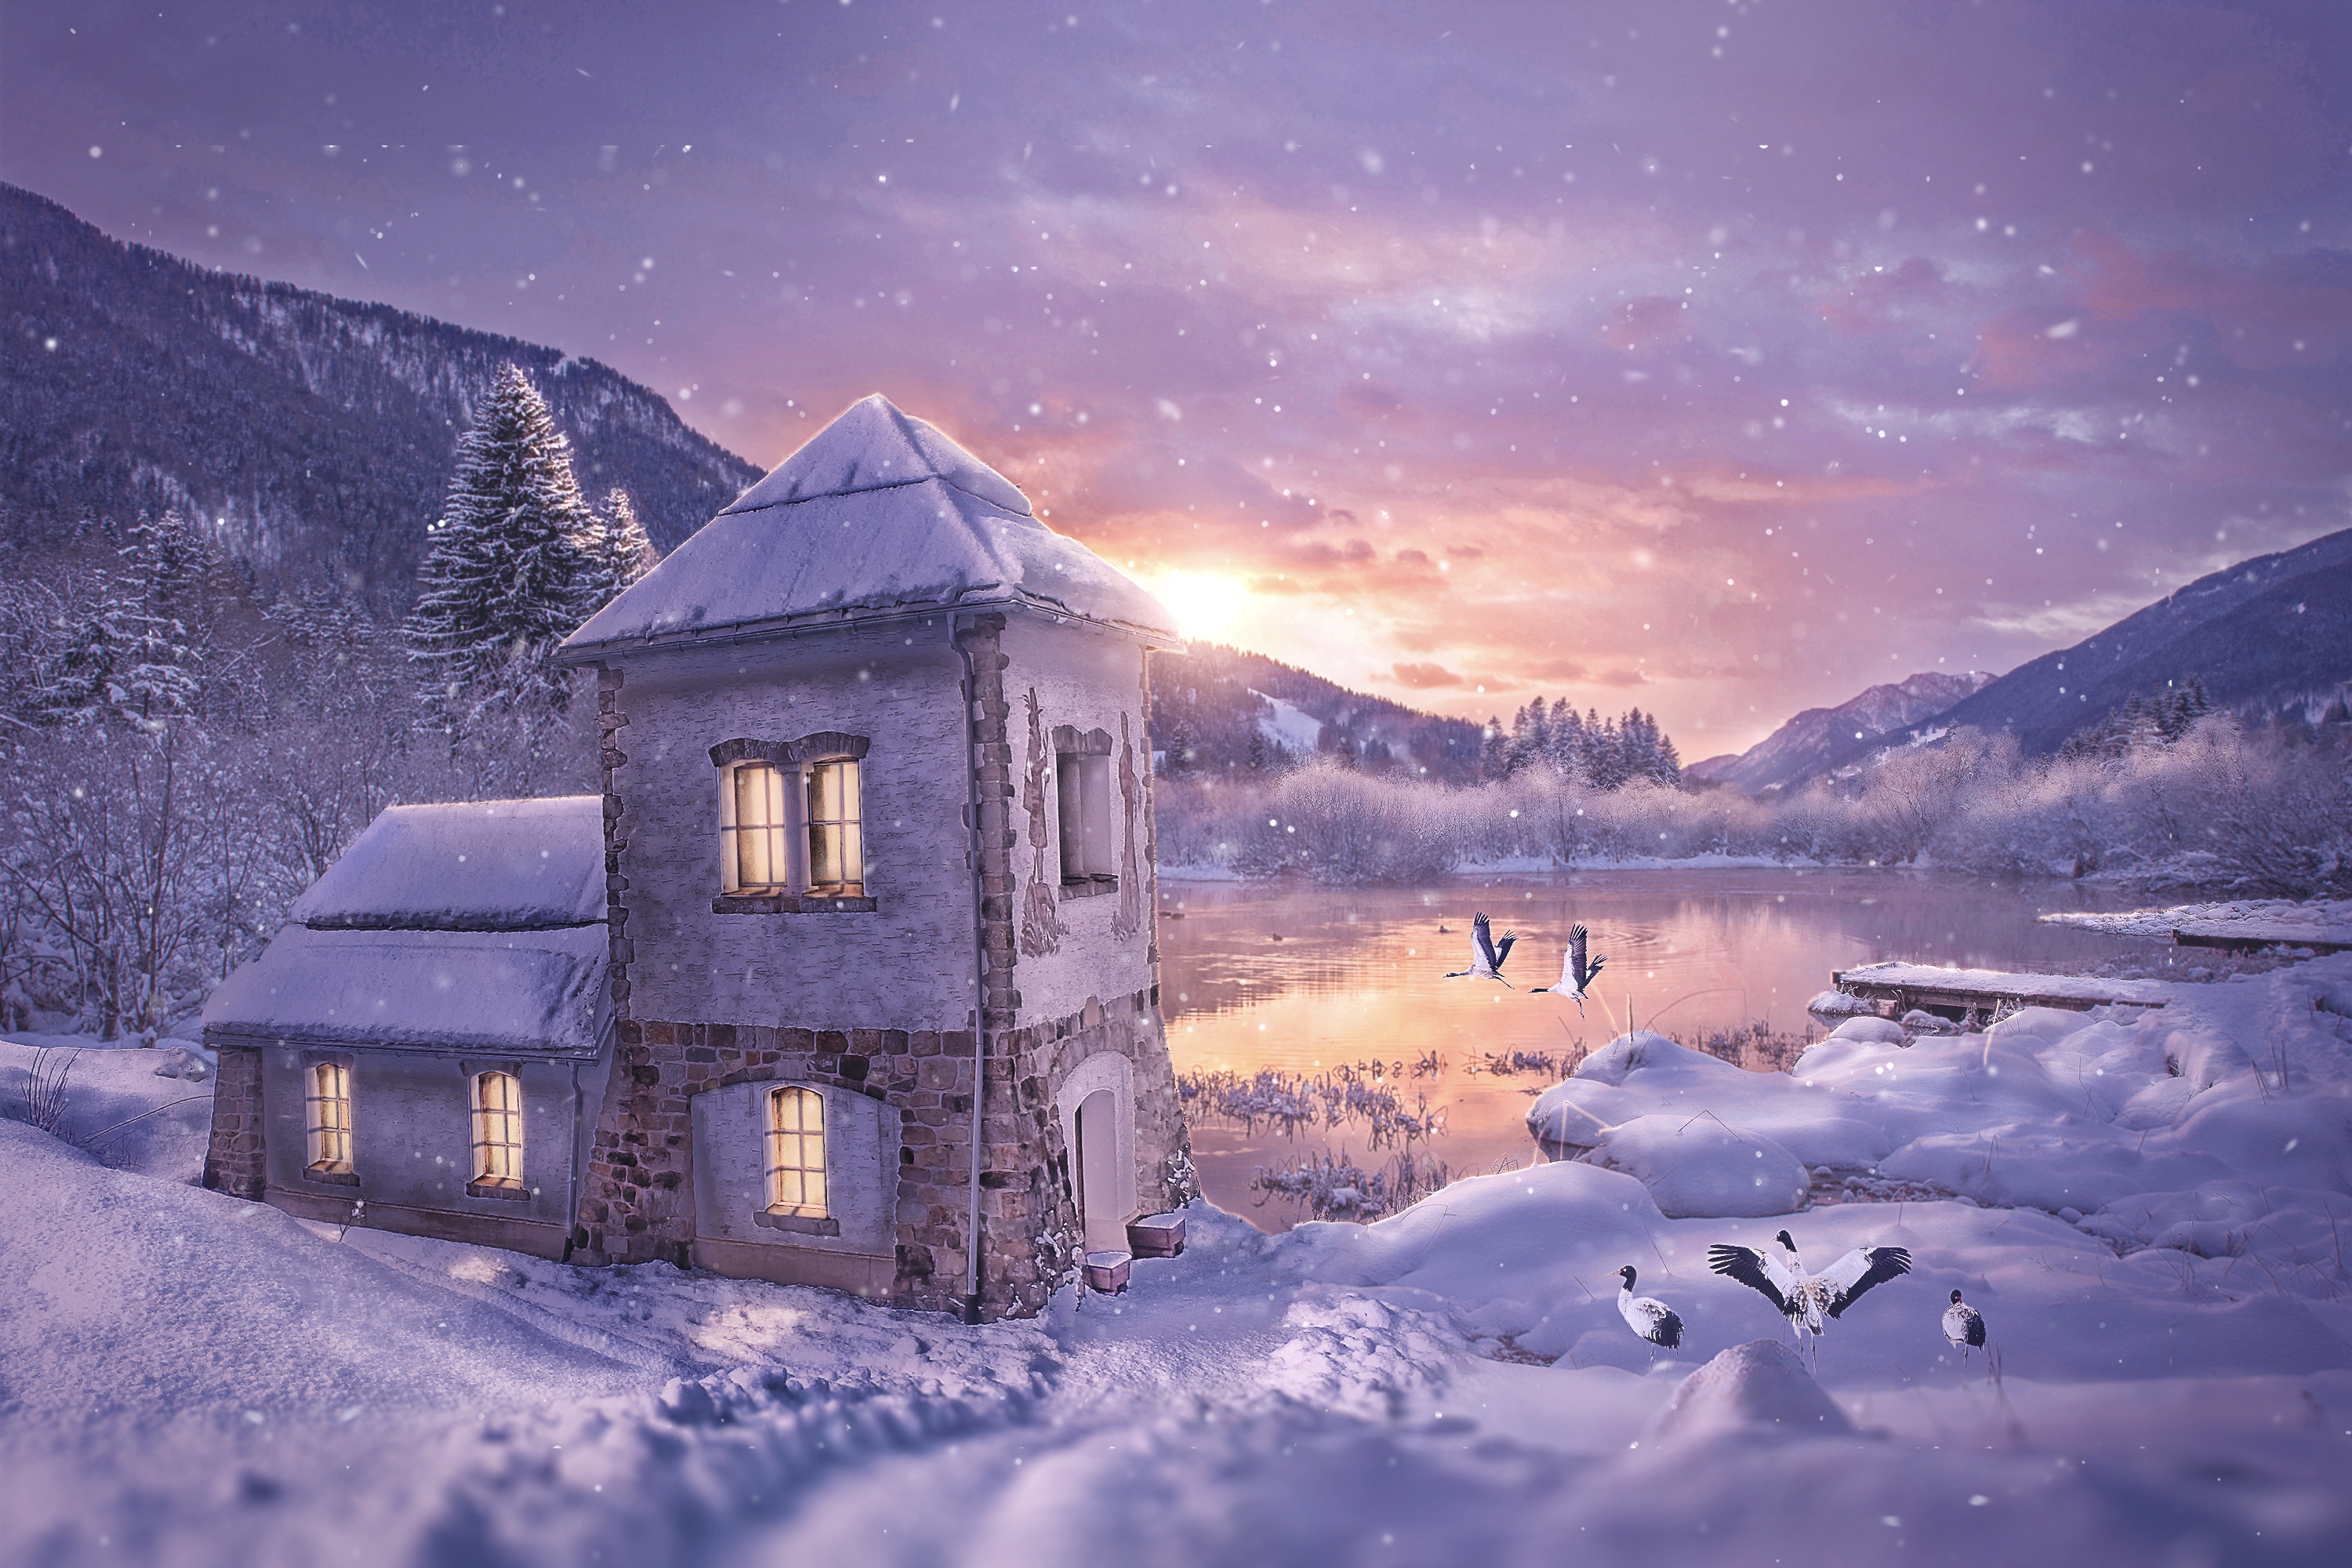 Снежка домики. Заснеженный домик. Зимний домик. Домик в снегу. Дом зимой.